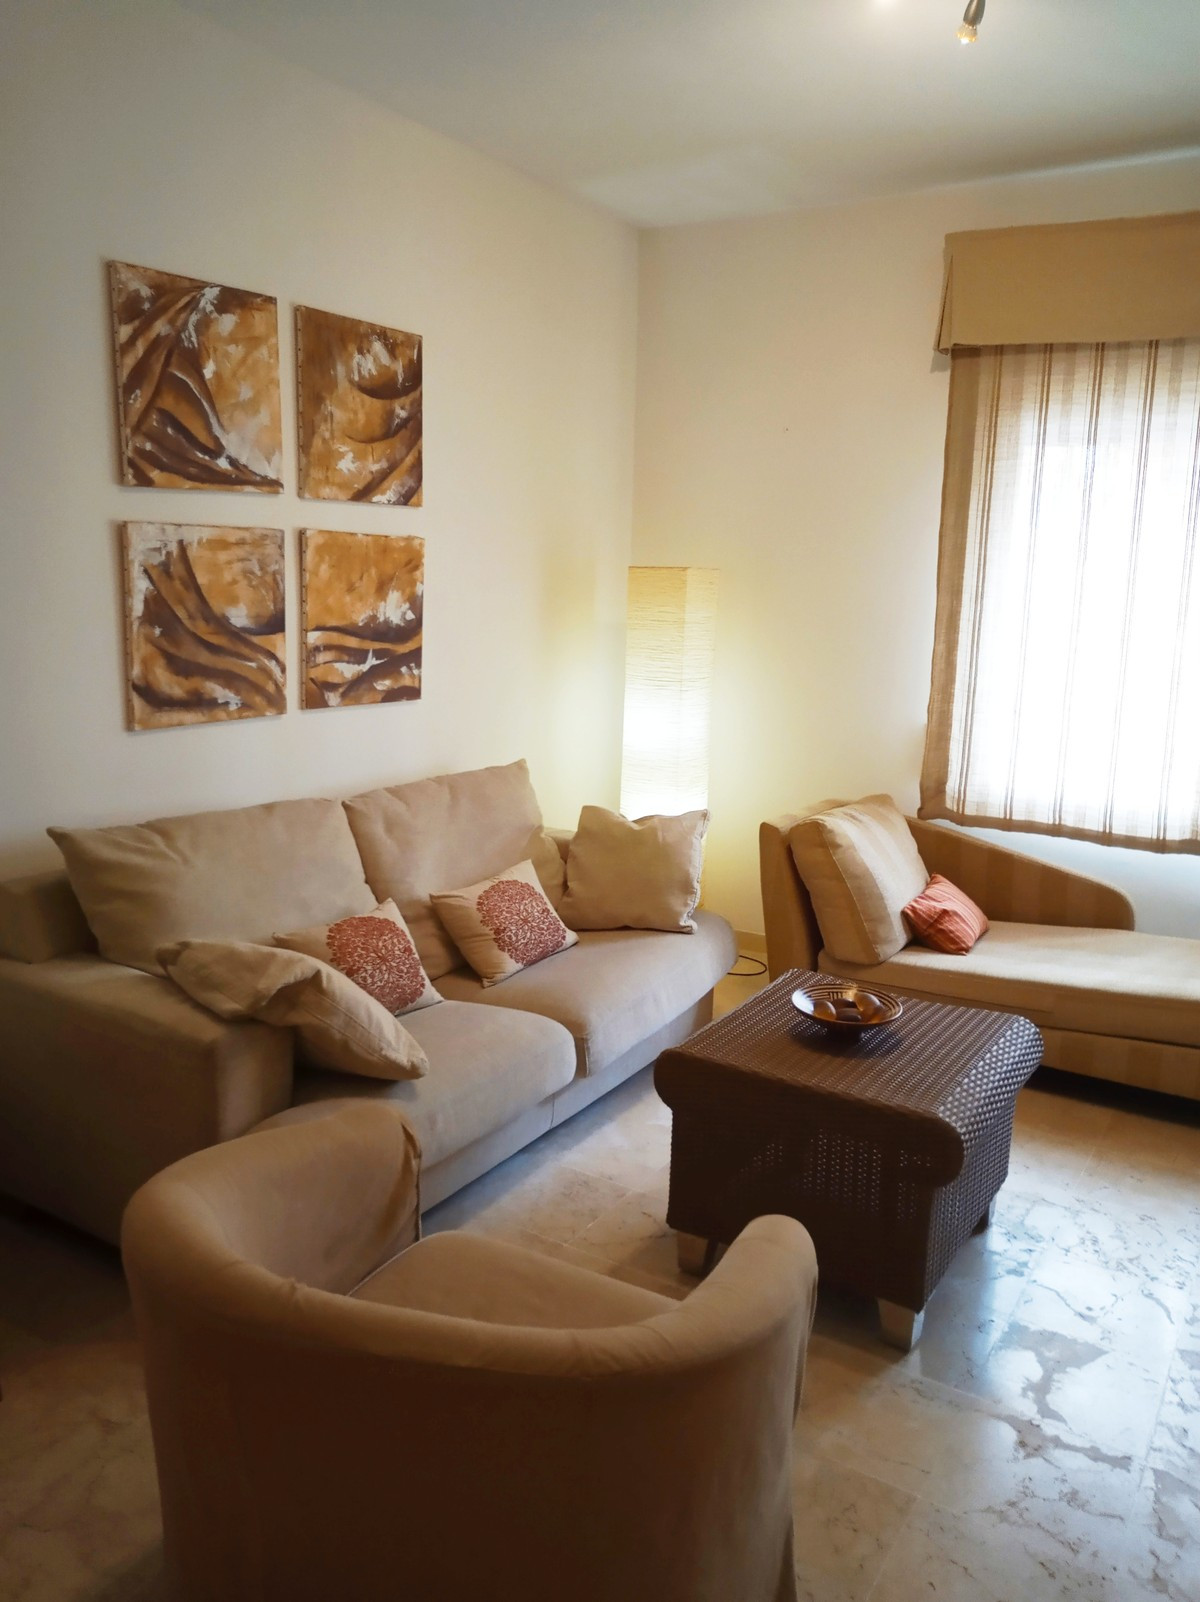 Qlistings - 2 Bedrooms Apartment in Benalmadena Costa, Costa del Sol Property Thumbnail